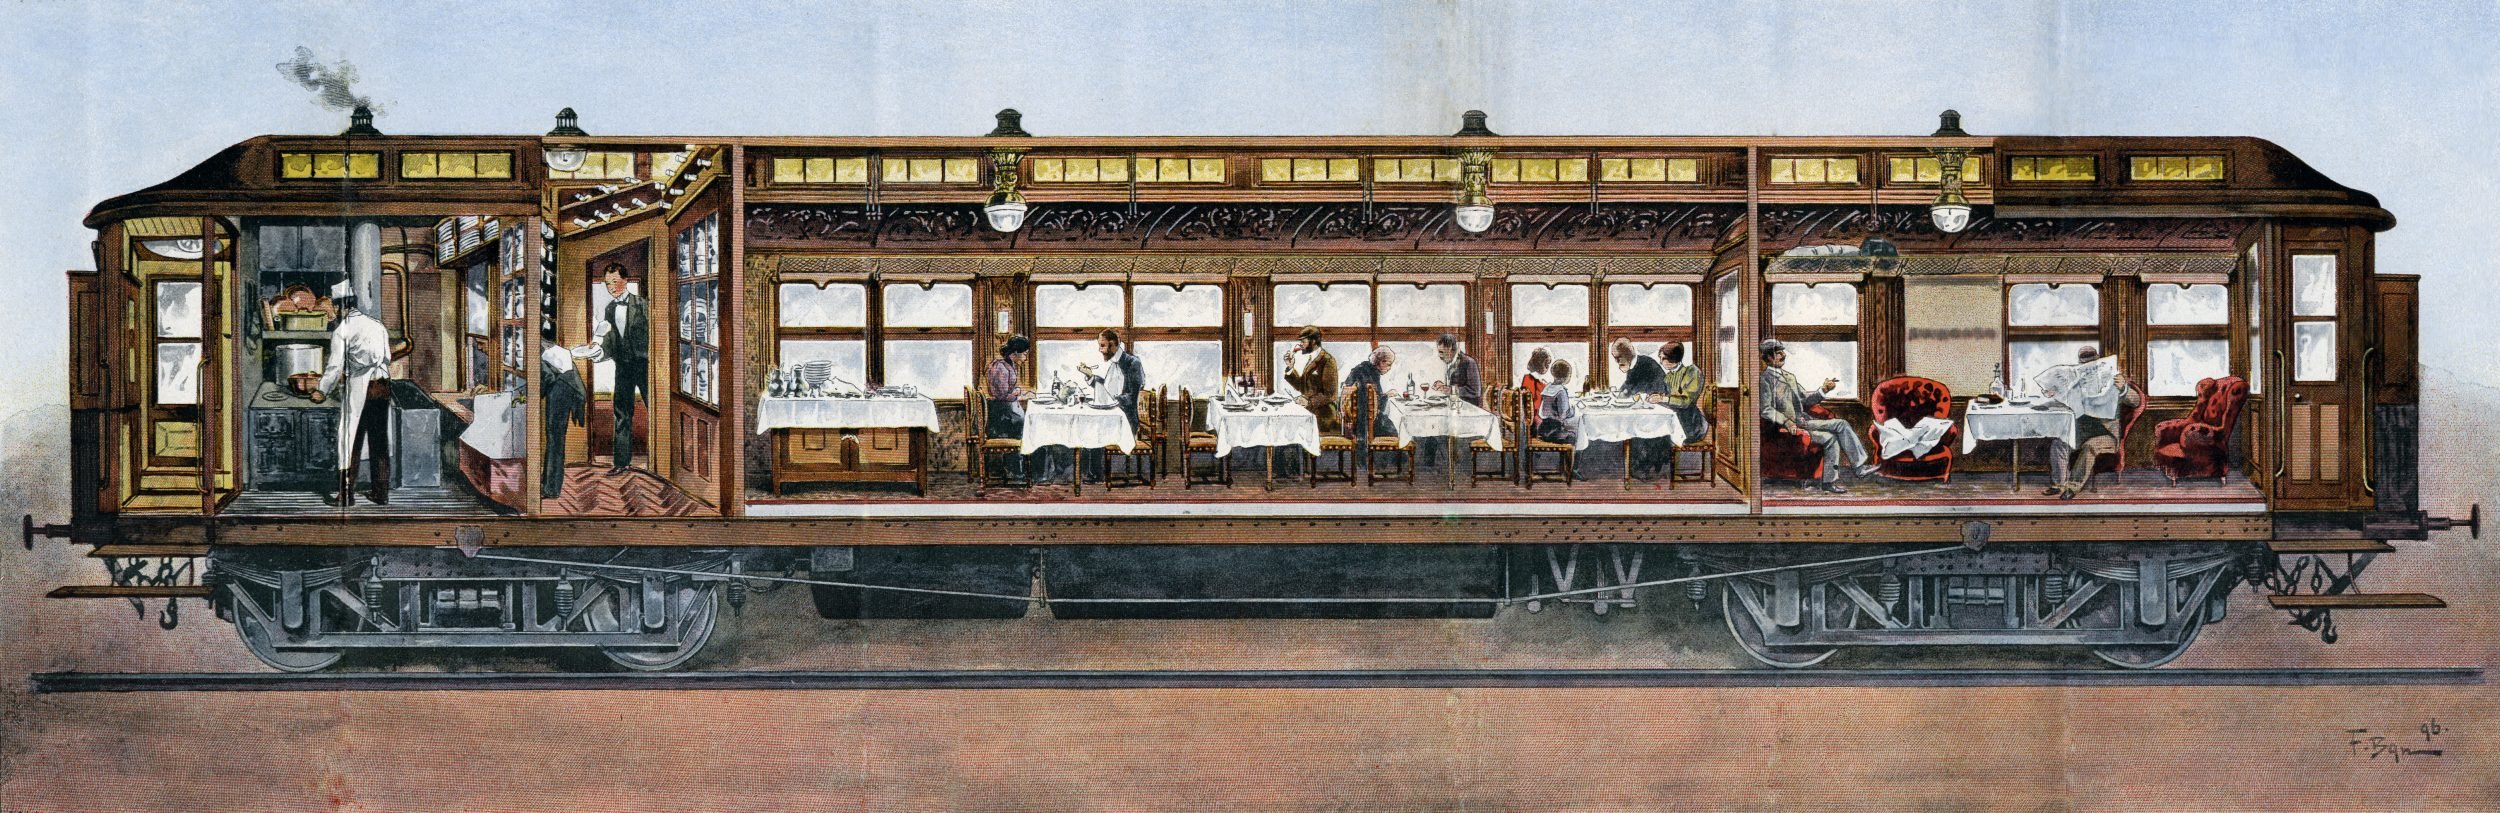 First railway. Поезд Восточный экспресс 19 века. Вагон-ресторан Восточный экспресс 19 века. Вагон “Orient Express”. Восточный экспресс паровоз 19 век.